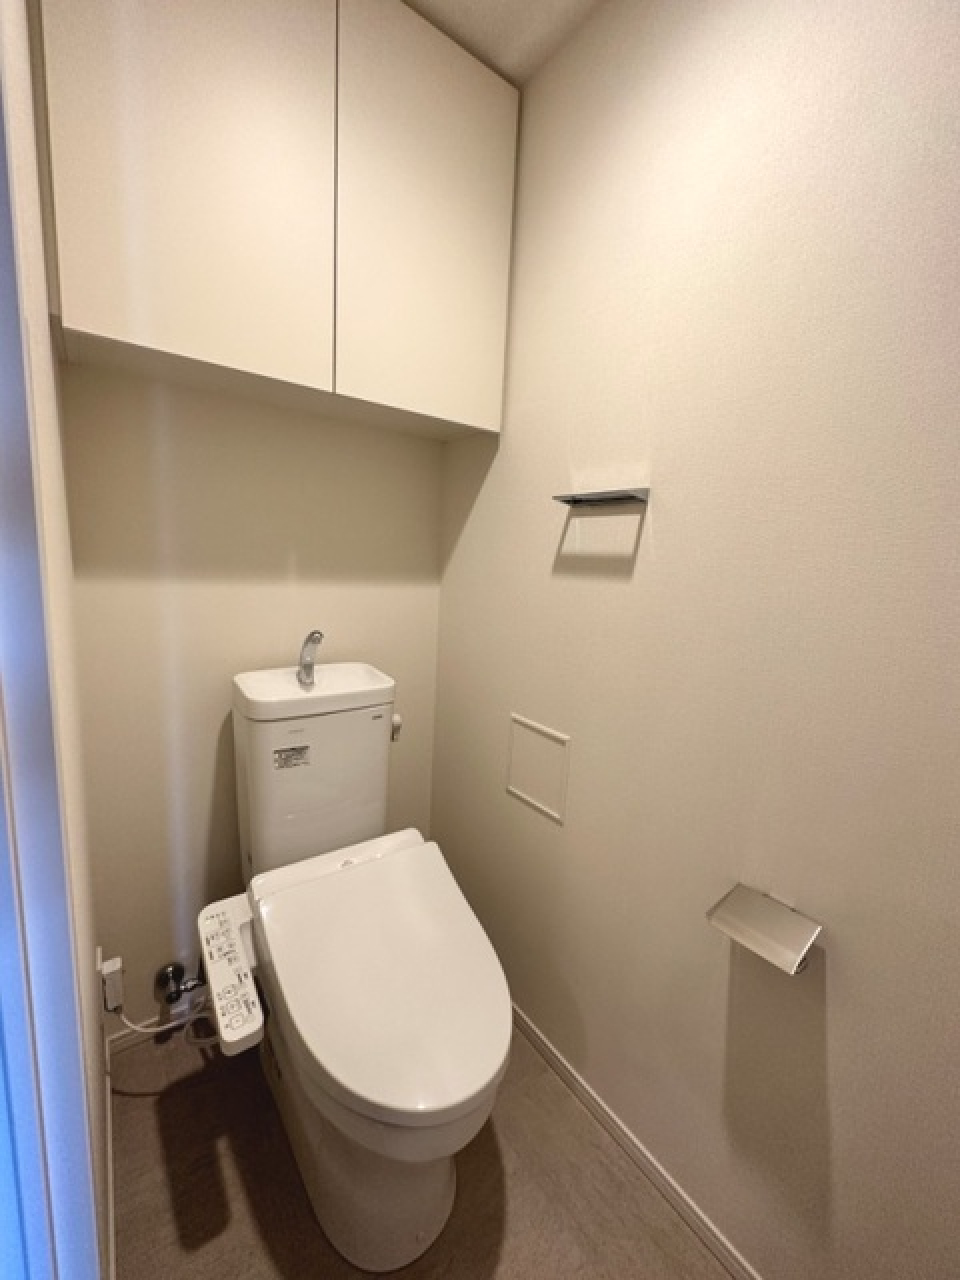 トイレです。頭上に収納棚が付いています。
※写真は同タイプ住戸です。